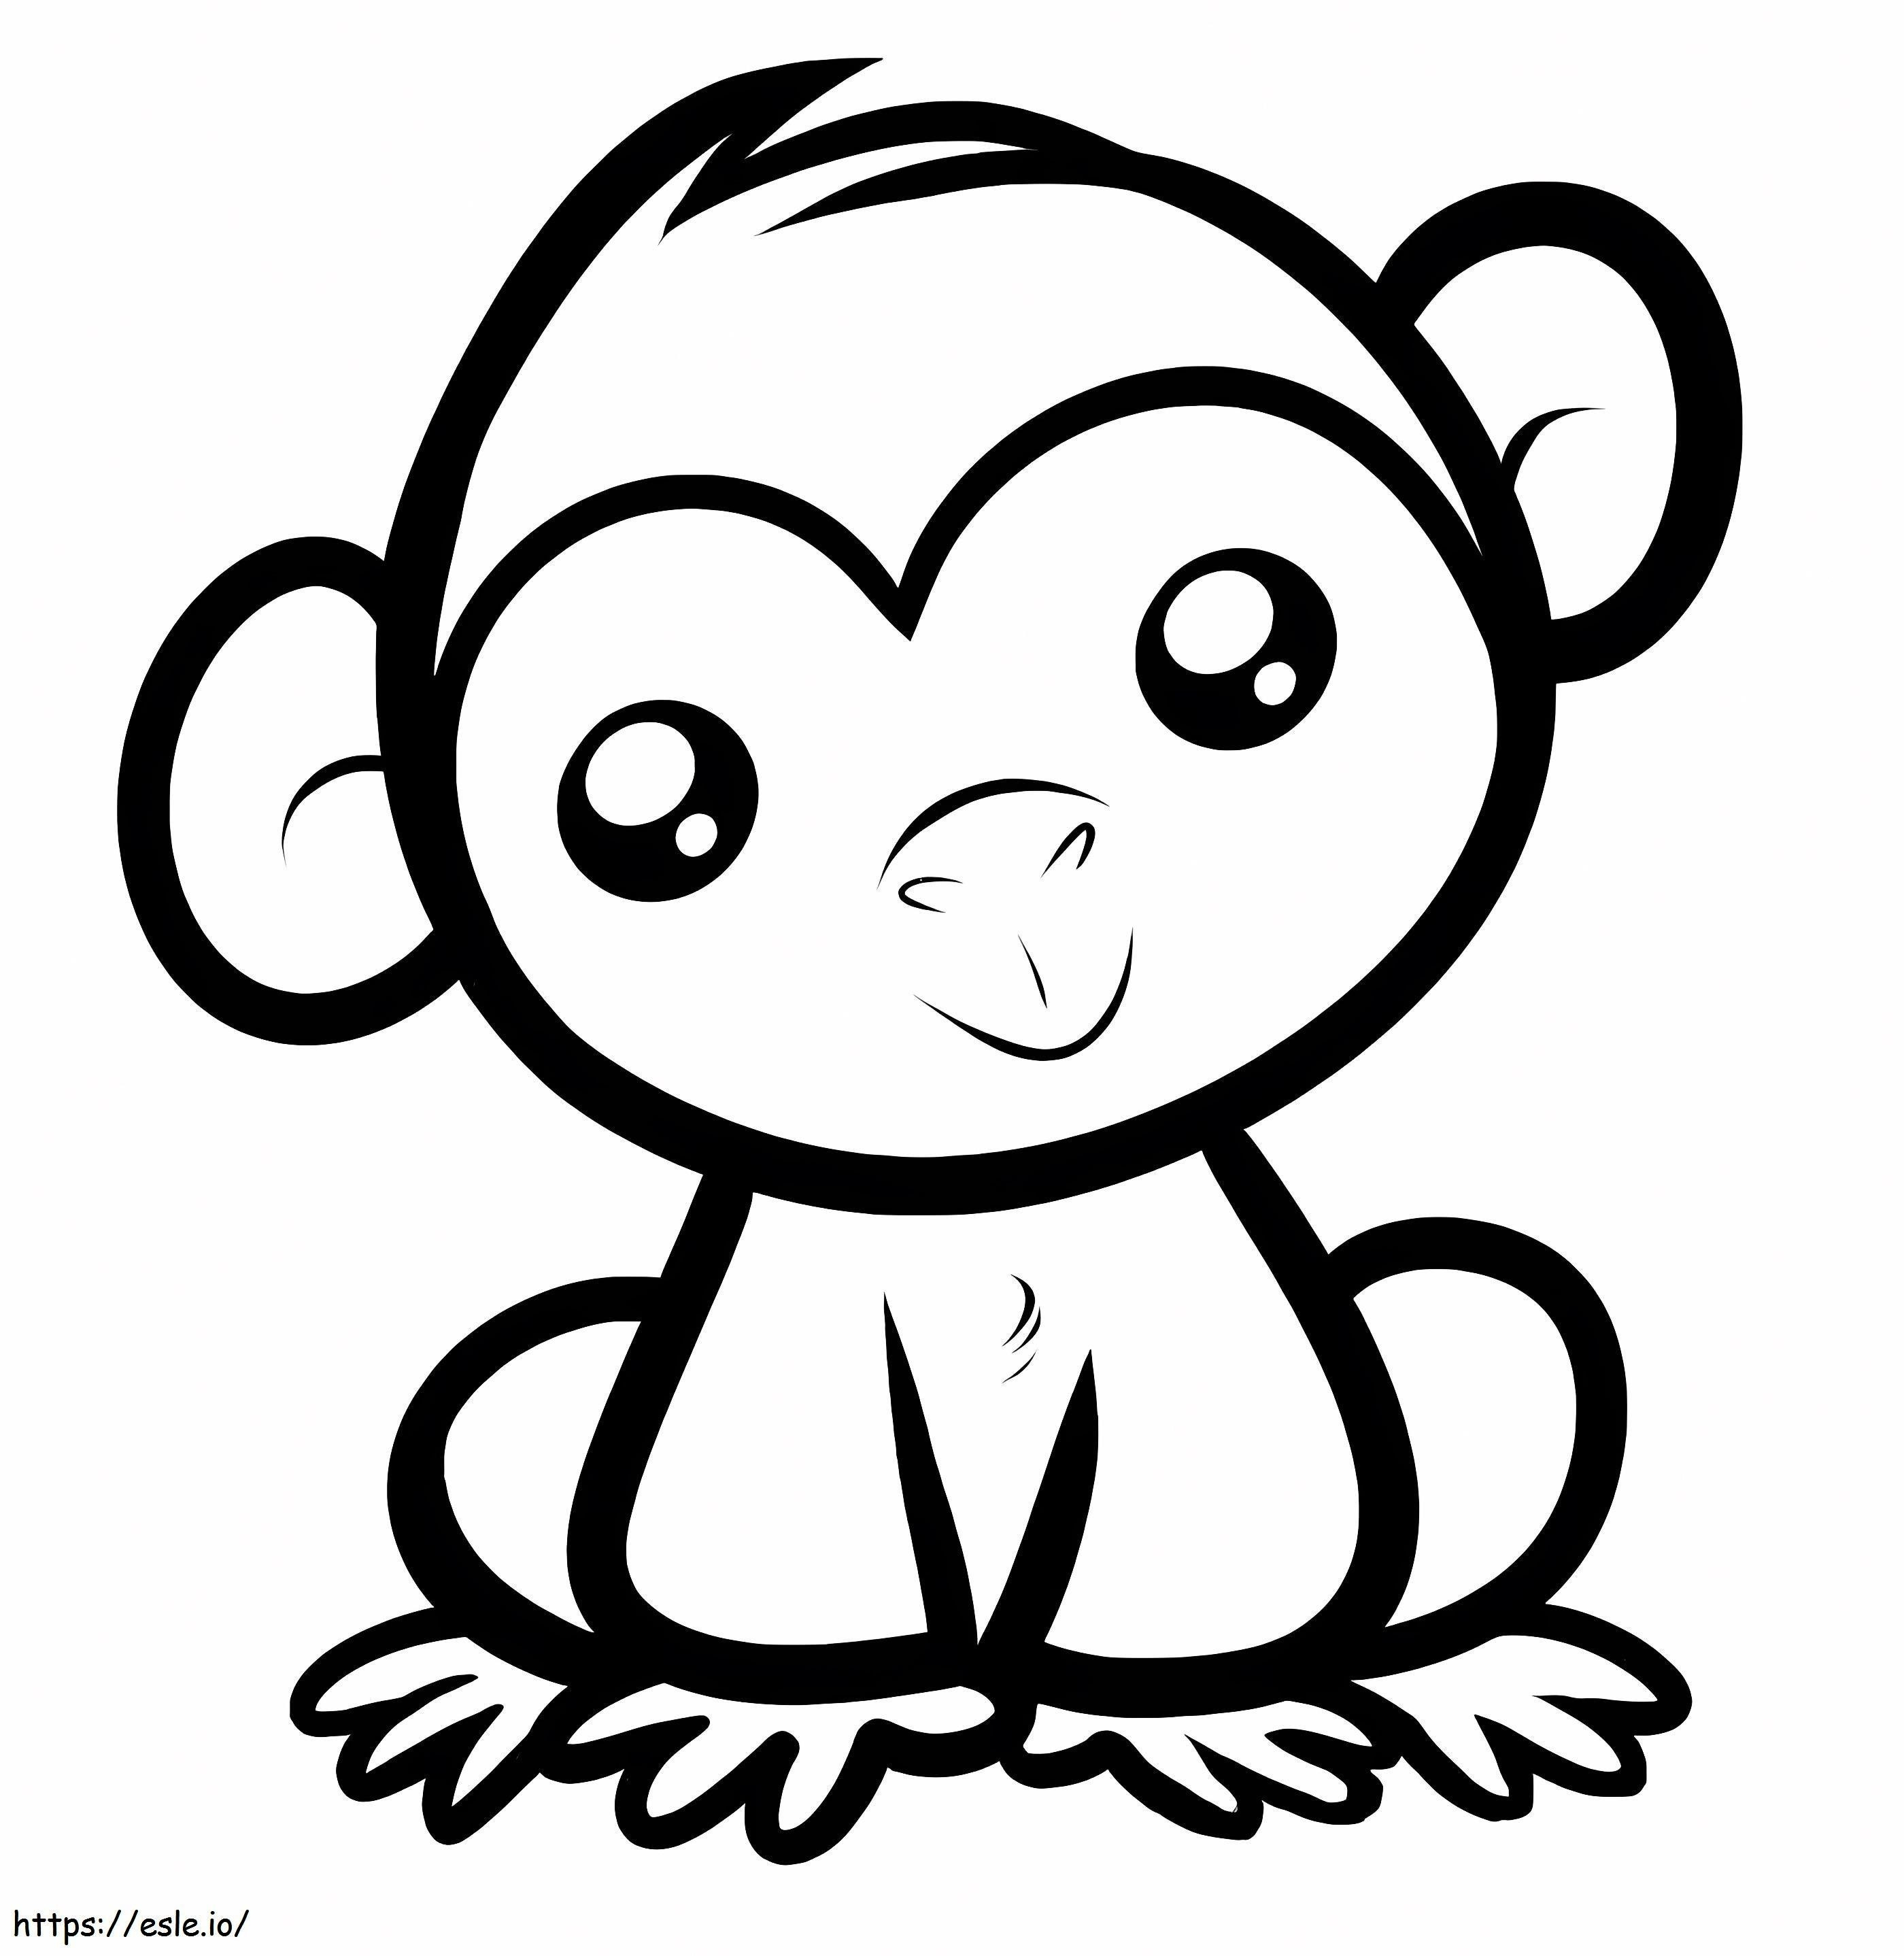 Macaco fácil sorrindo para colorir